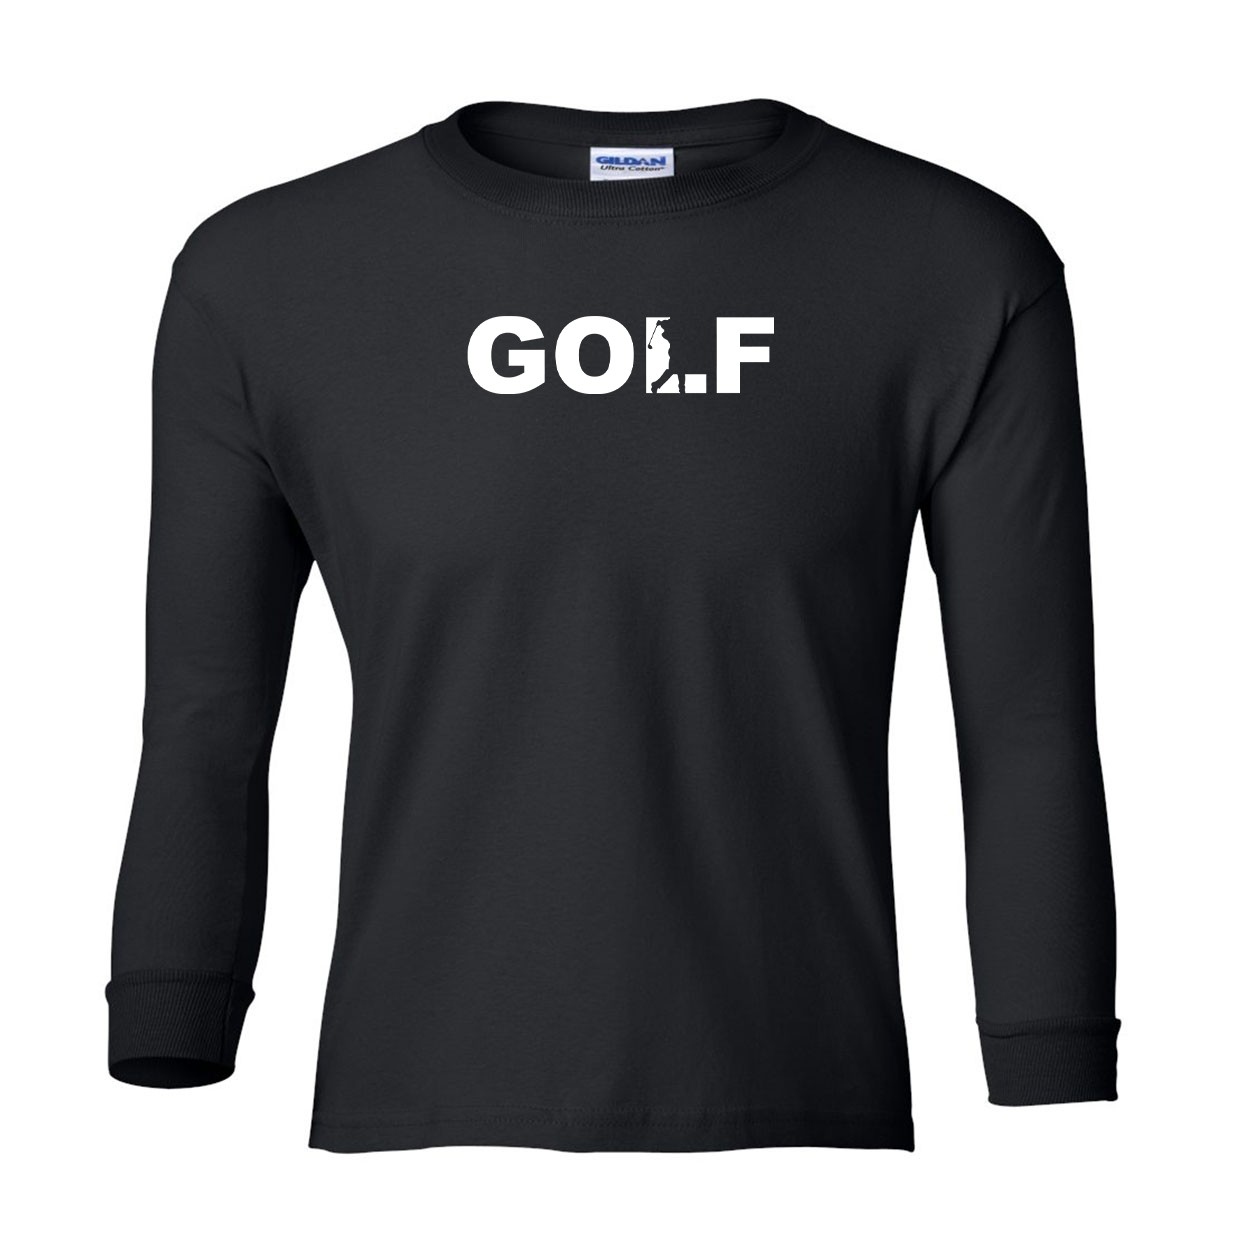 Golf Swing Logo Classic Youth Unisex Long Sleeve T-Shirt Black (White Logo)